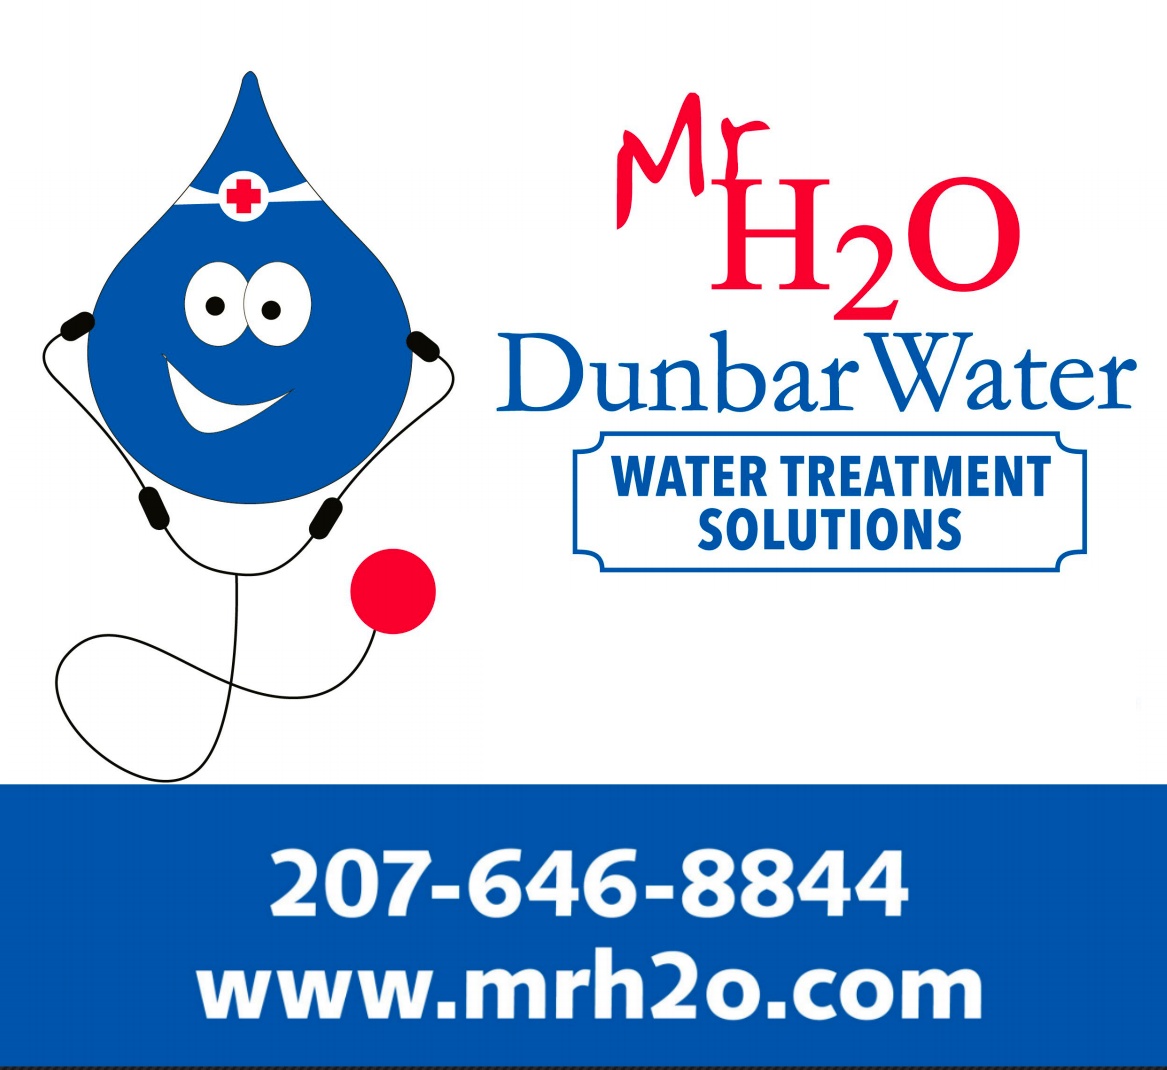 Dunbar Water Treatment